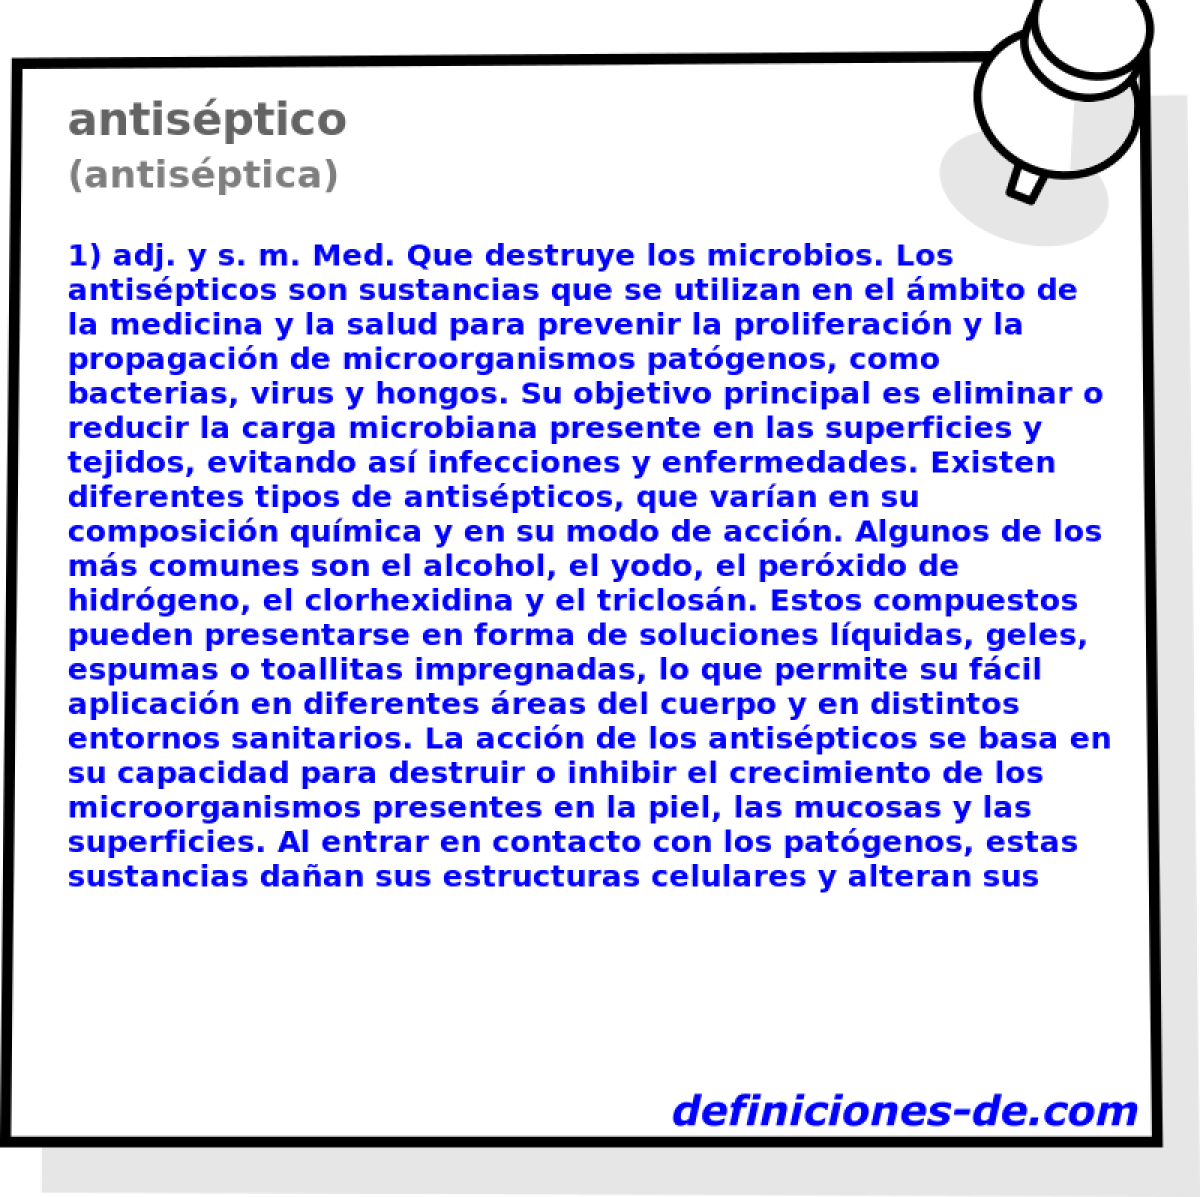 antisptico (antisptica)